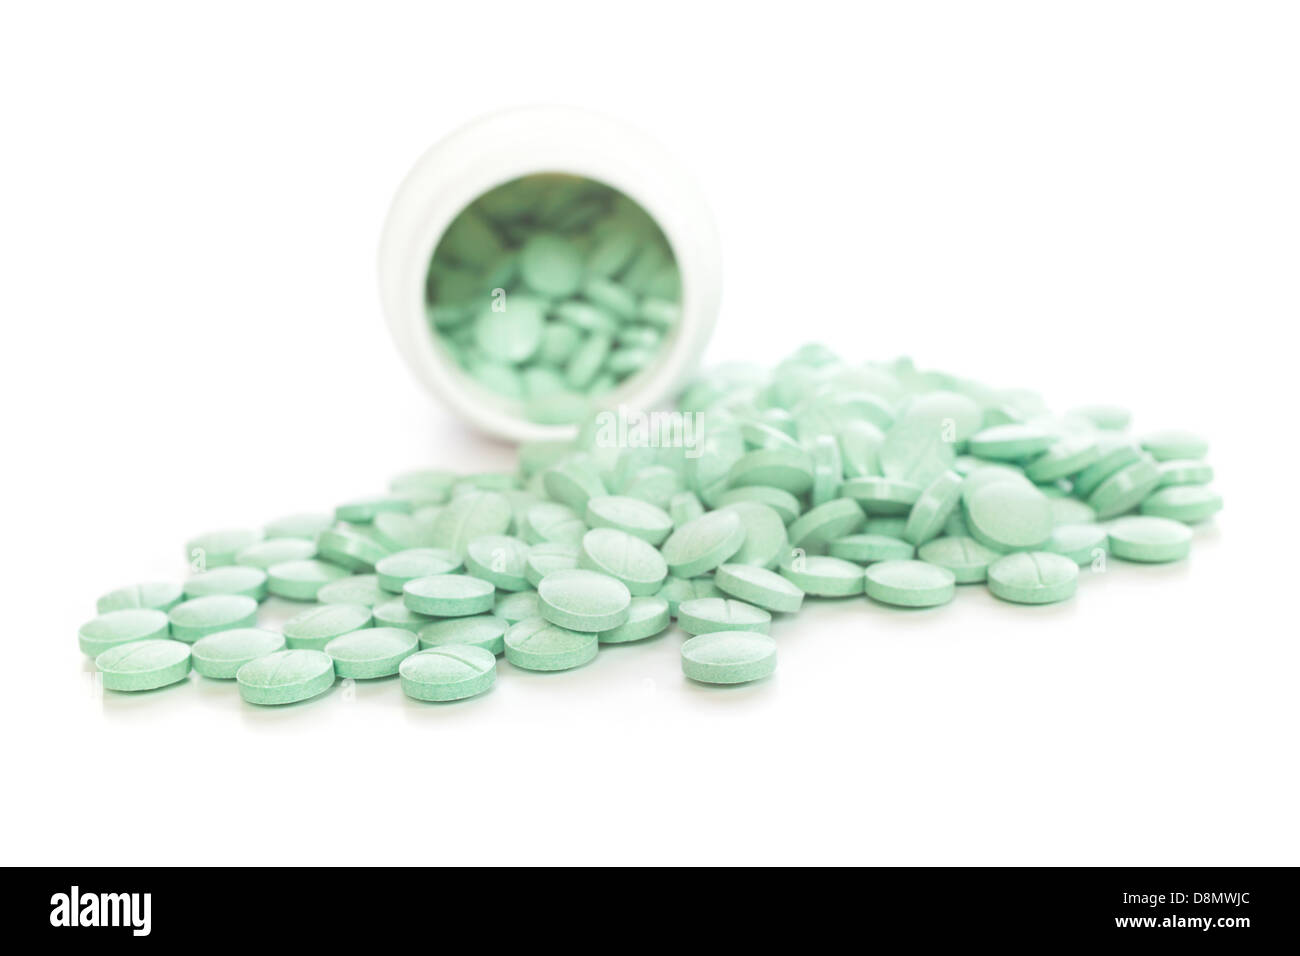 Los medicamentos recetados - tabletas verde derramándose de un plástico blanco botella de prescripción. DOF superficial, centrarse en primer plano. Foto de stock